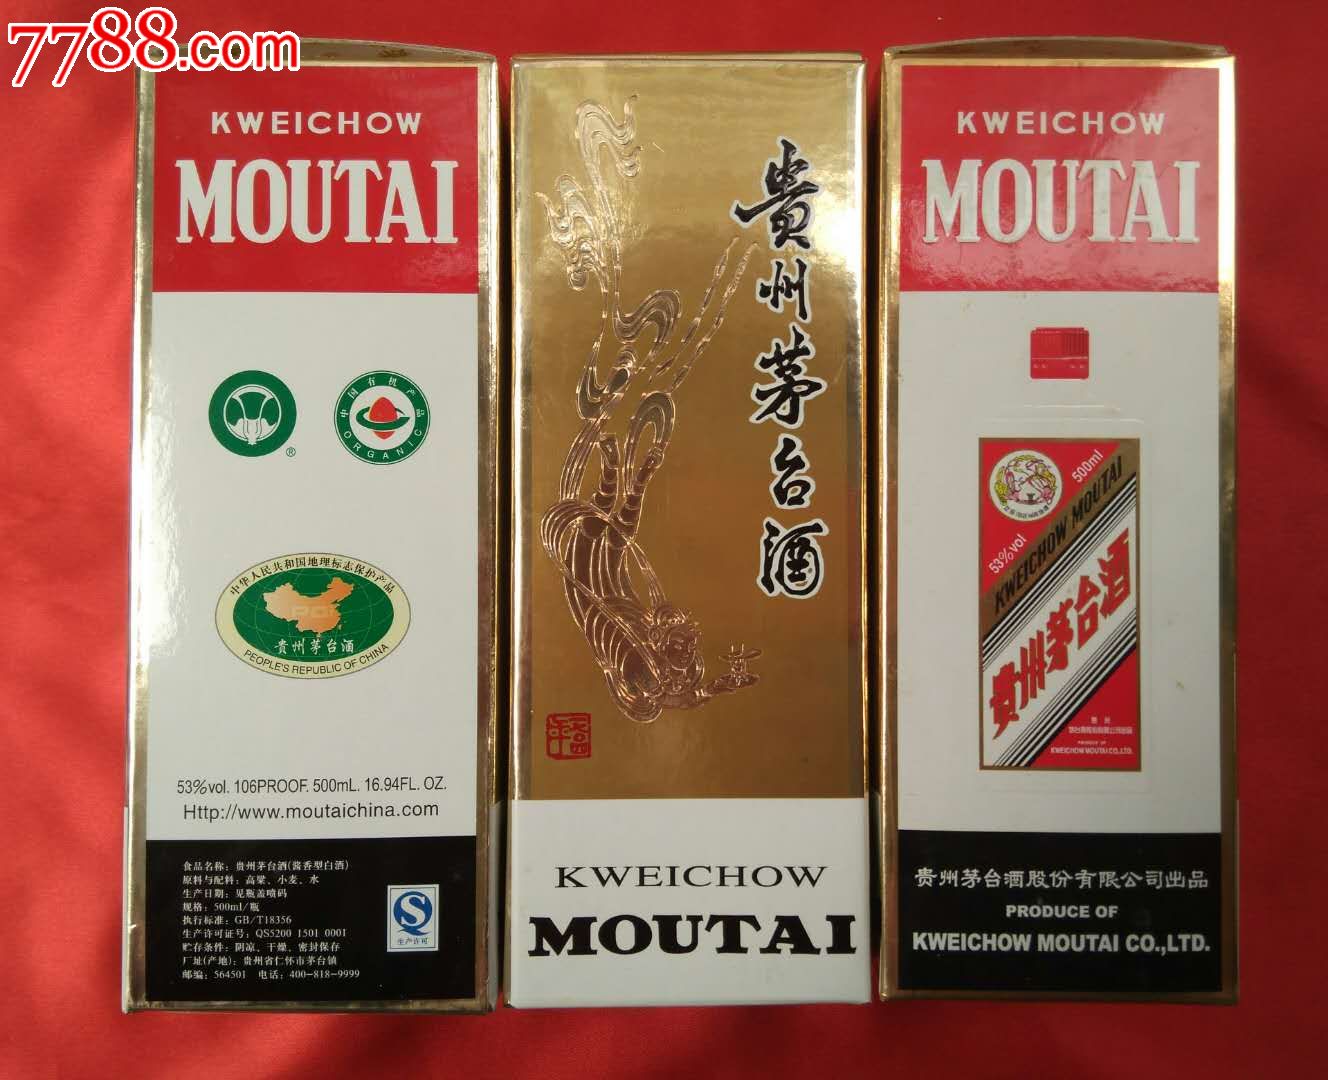 2013年贵州茅台酒带原包装盒酒瓶共6件套